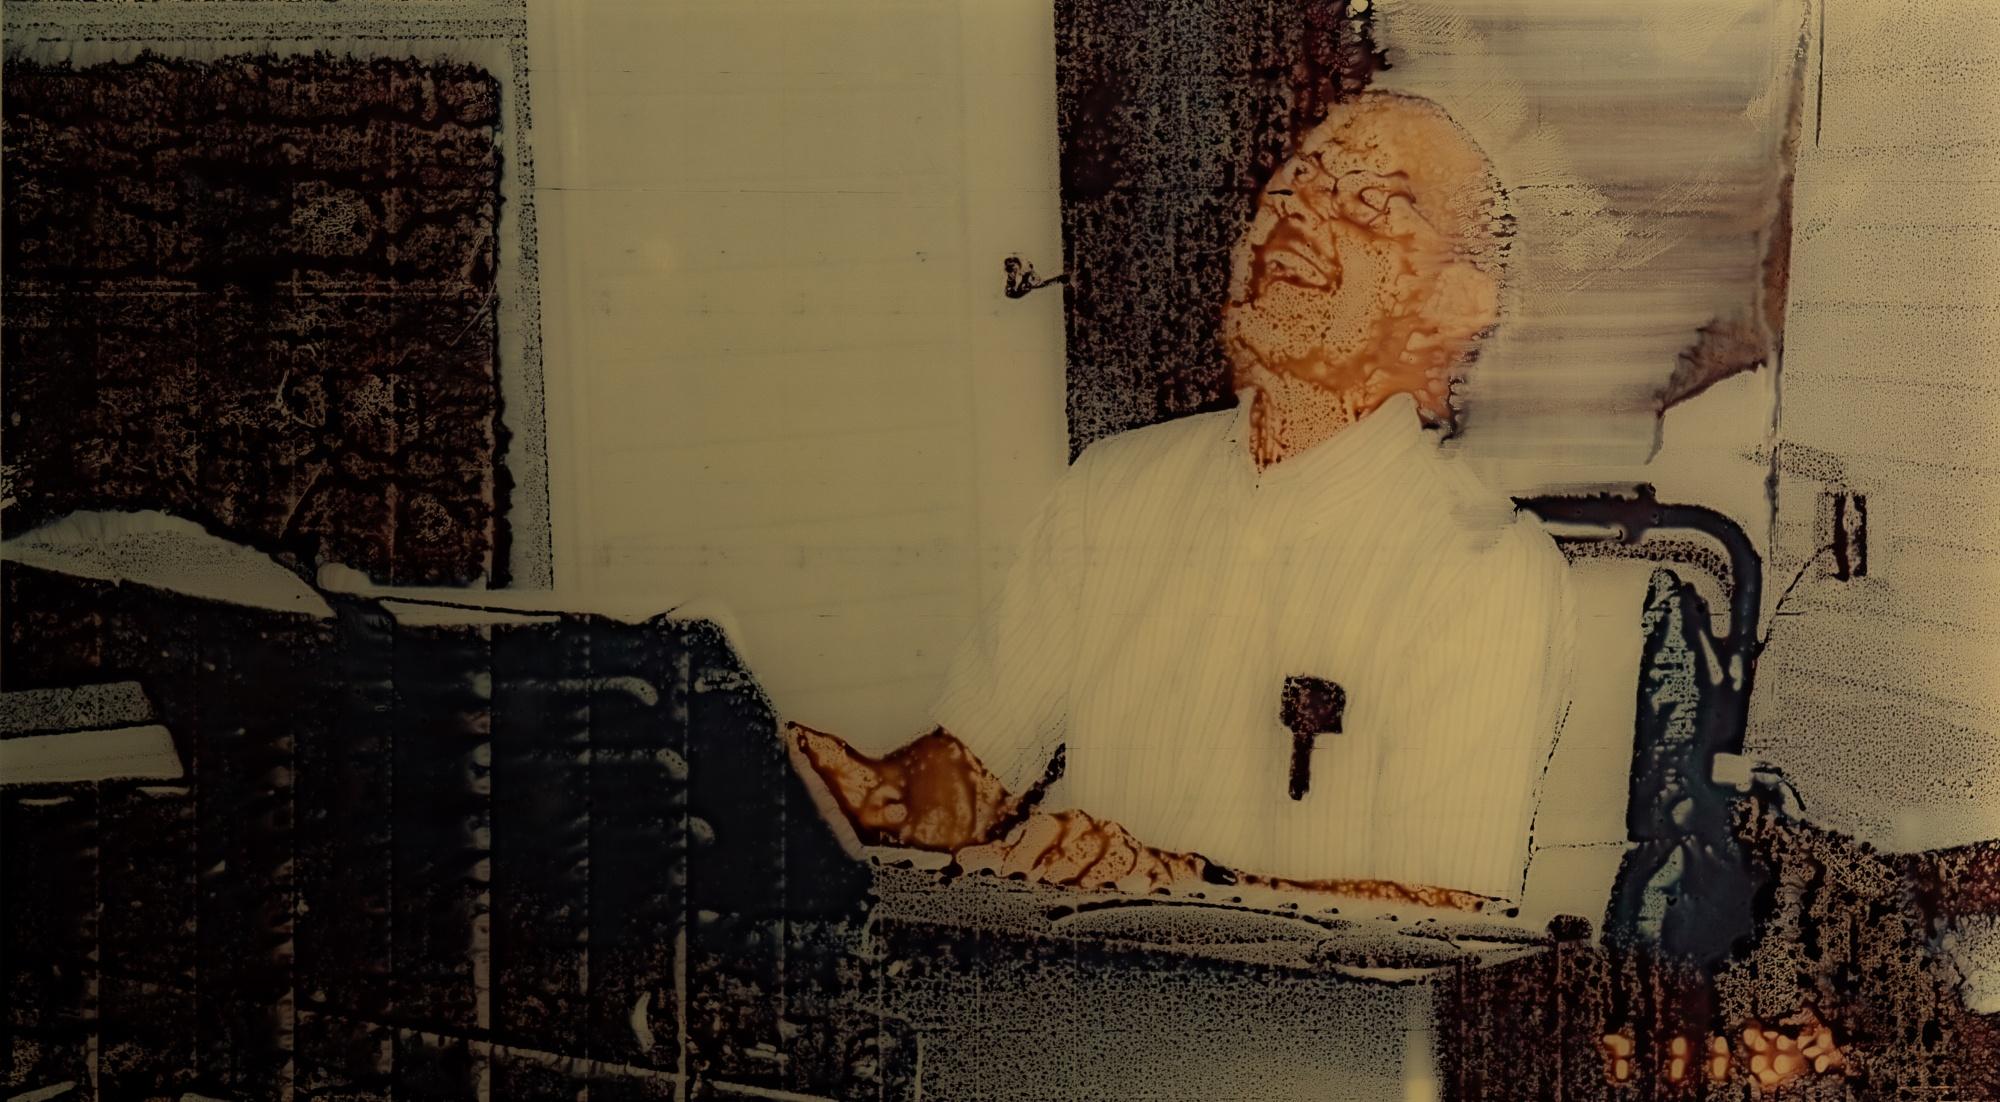 Seba KURTIS (*1974, Argentine)
Le Dr Bruce Ivins jouant du clavier à l'église, 2004, de la série "Chemical Reaction", 2022
Impression Lambda C-Type sur aluminium 3mm
Feuille 61 x 91,4 cm (24 x 36 in.)
Edition de 7
Imprimer seulement

À propos de